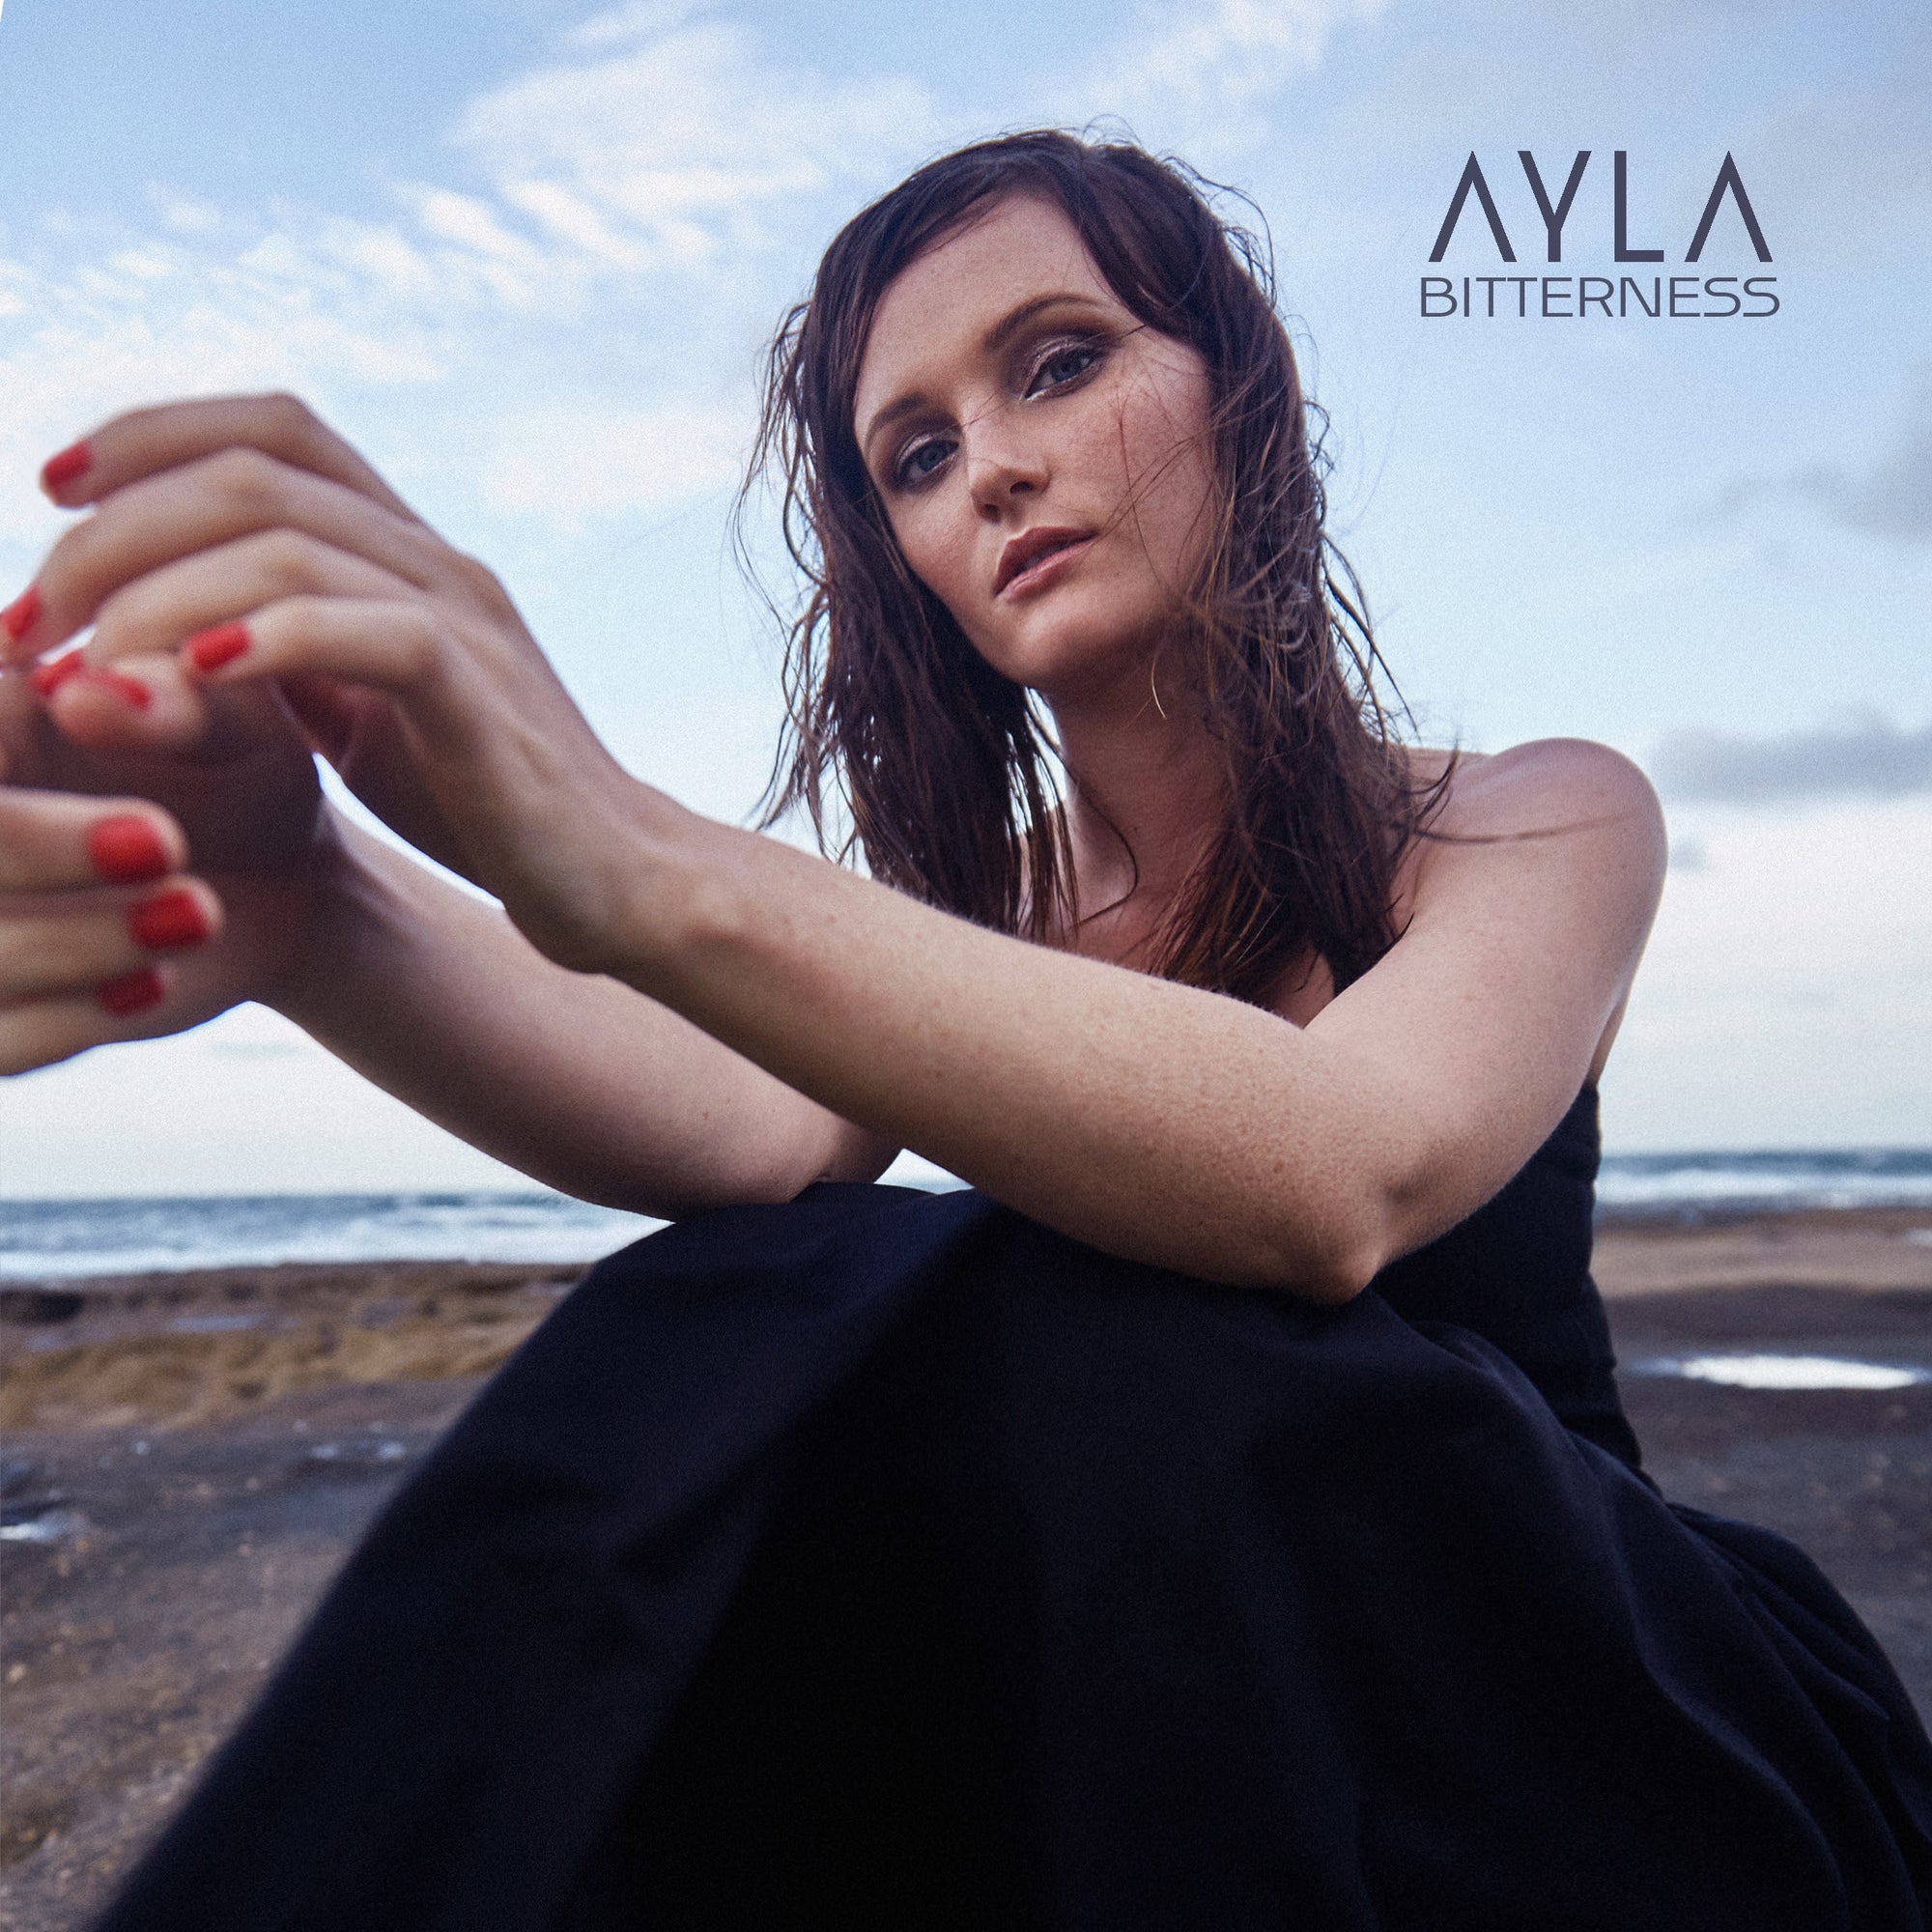 AYLA - 'Bitterness'